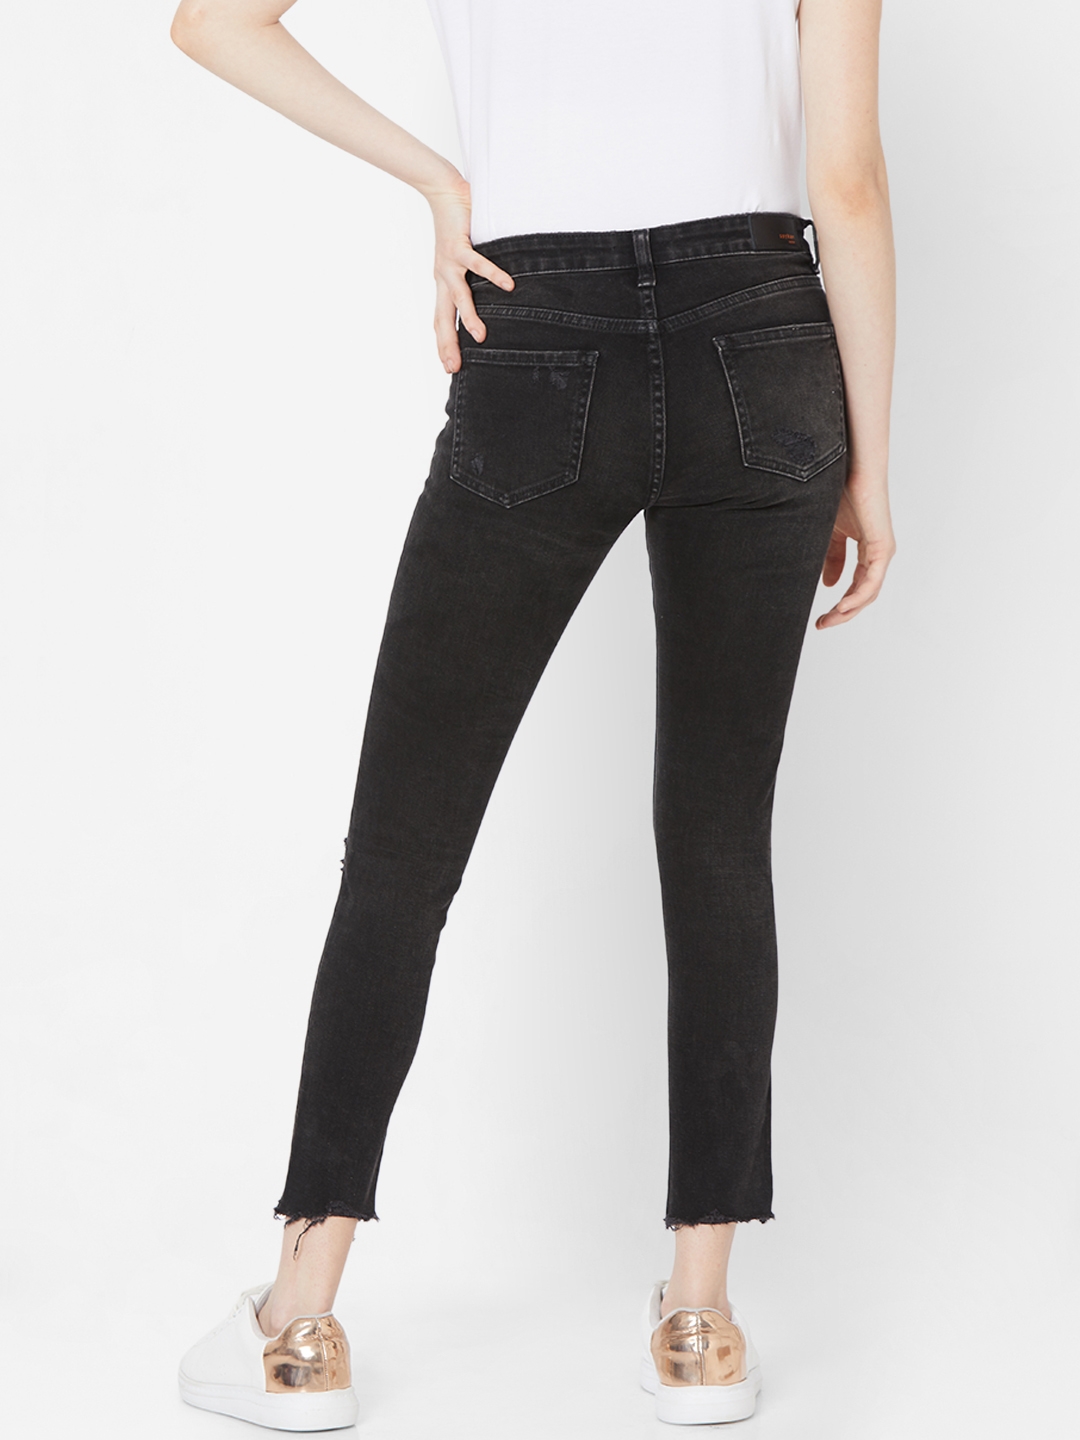 spykar | Women's Black Lycra Solid Ripped Jeans 3